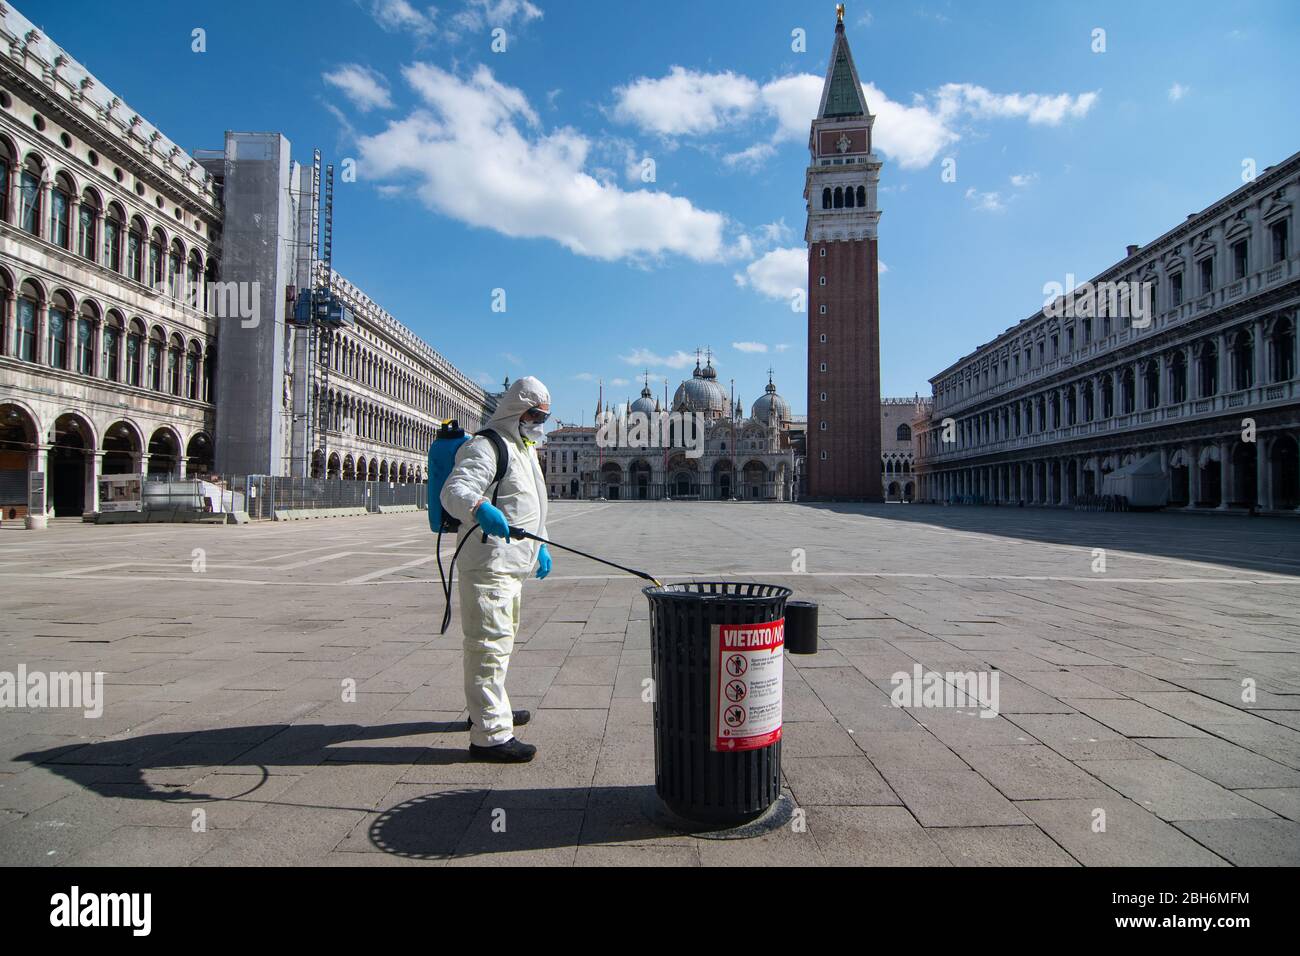 VENEZIA, ITALIA - APRILE 2020: Un operaio sanitizza l'area di Piazza San Marco durante la chiusura nazionale per la pandemia Covid-19. Foto Stock